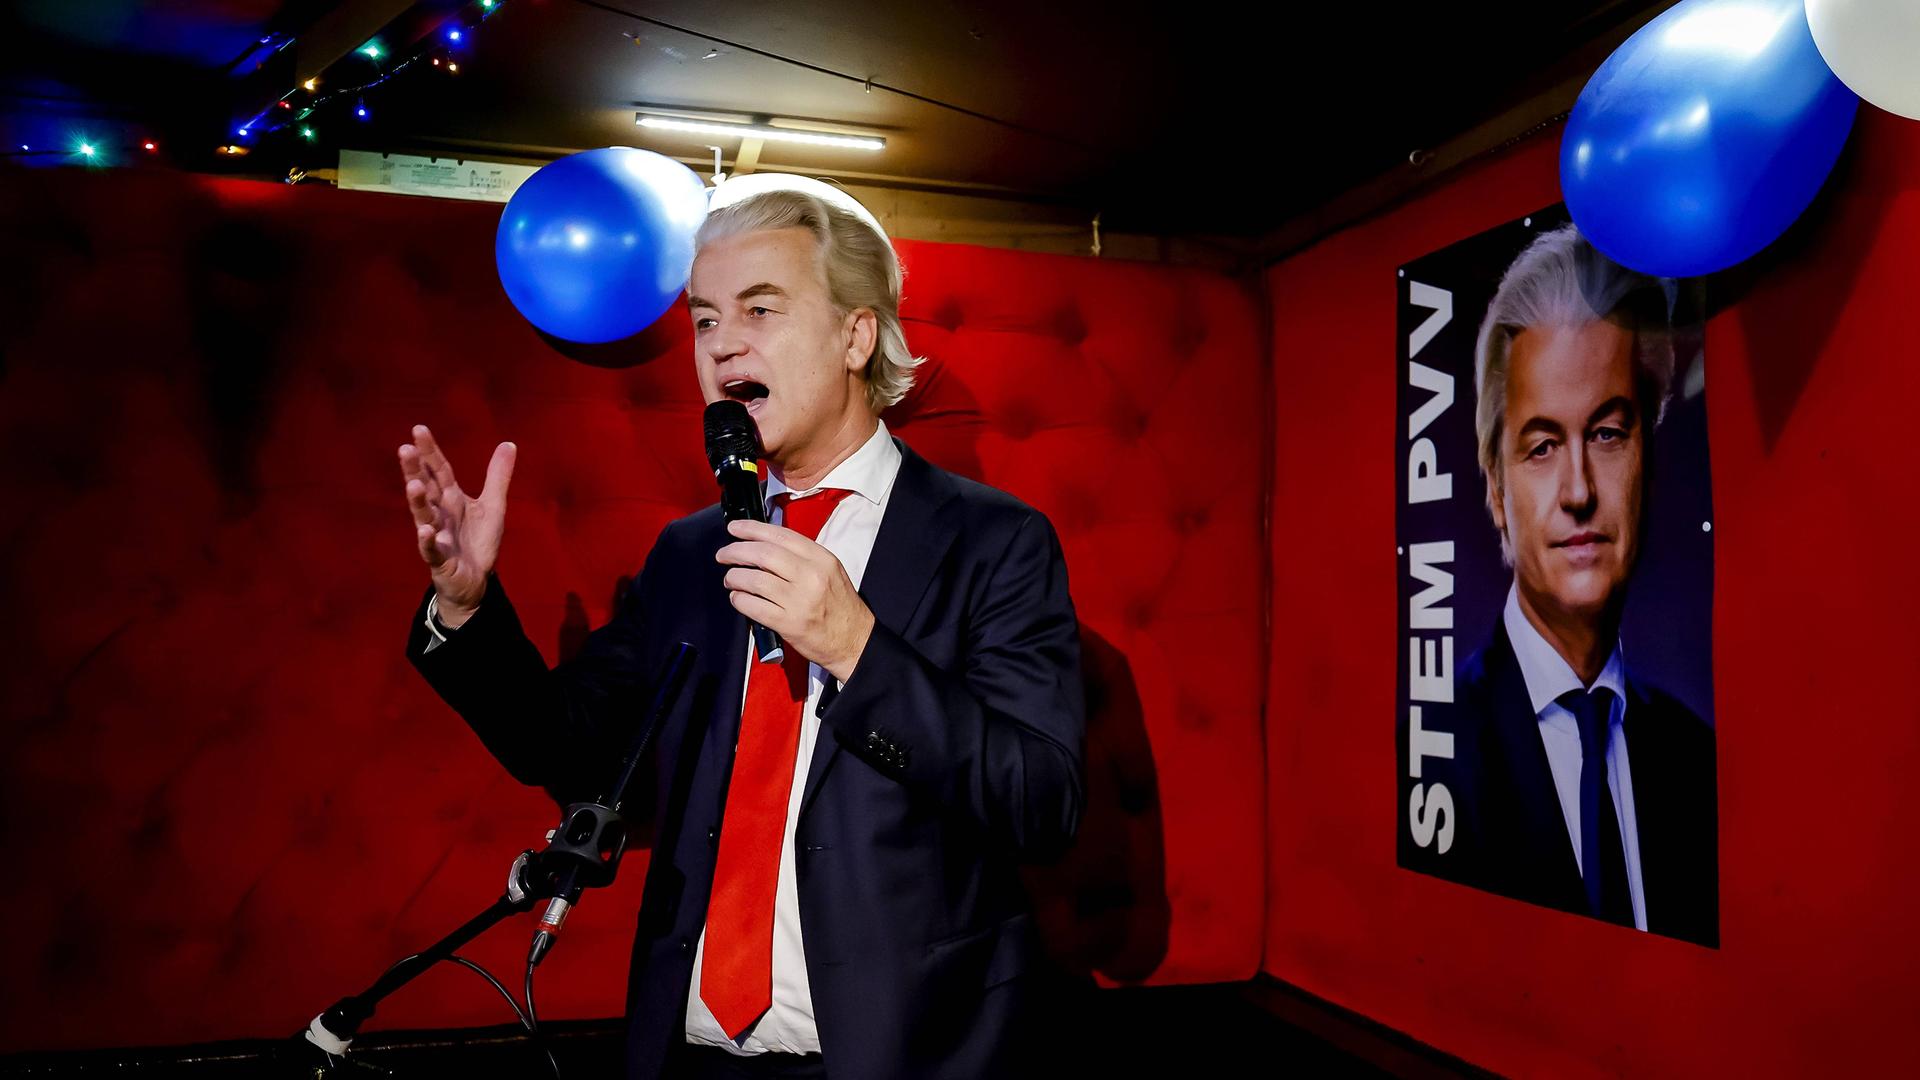 Der niederländische Rechtspopulist Geert Wilders von der Partei PVV.